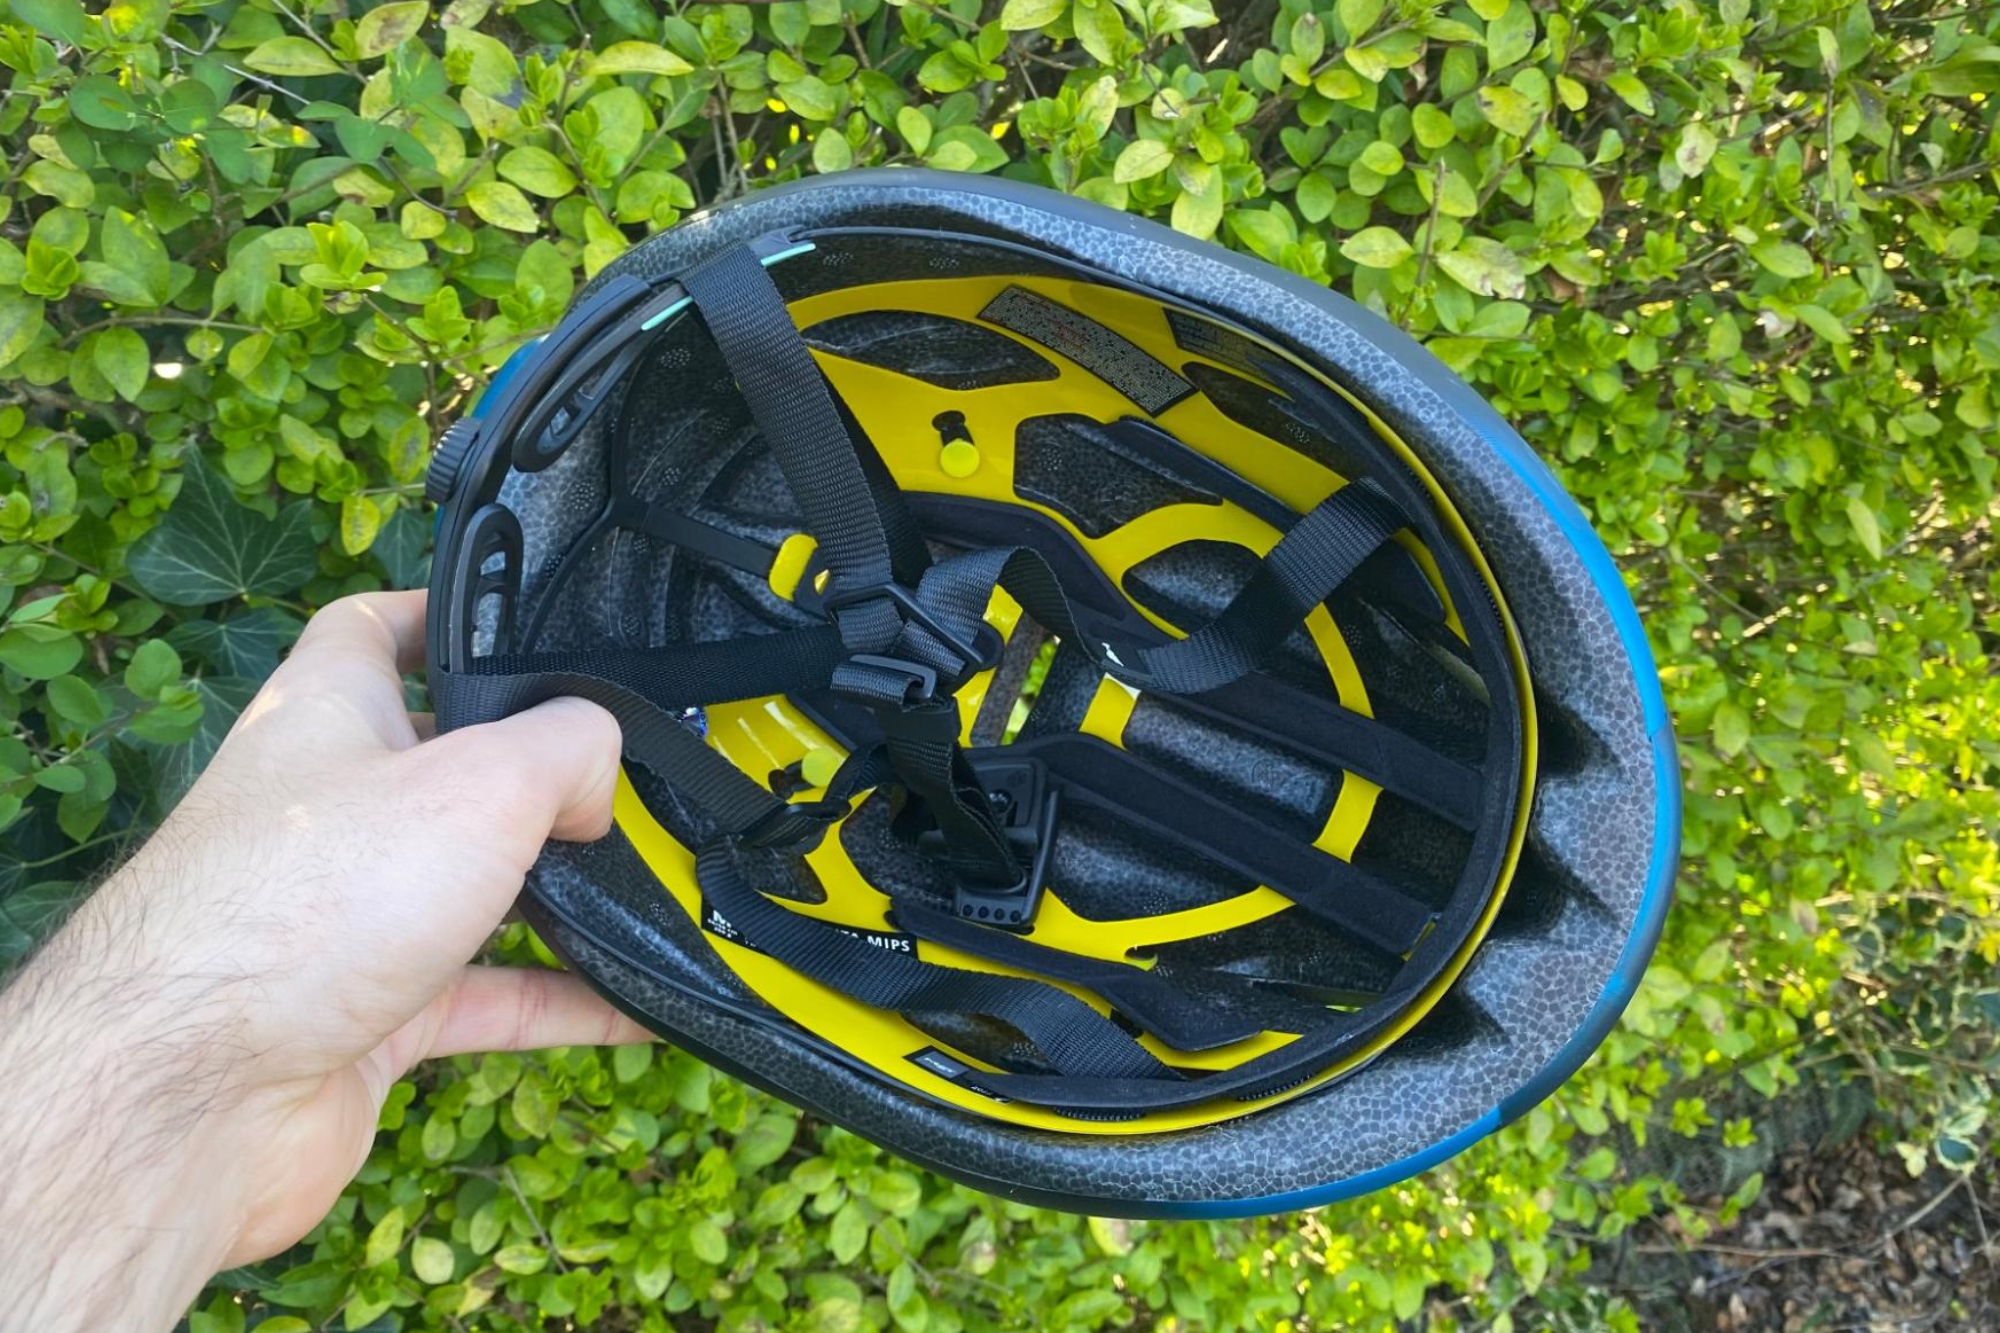 MET Manta MIPS helmet being held by a male cyclist